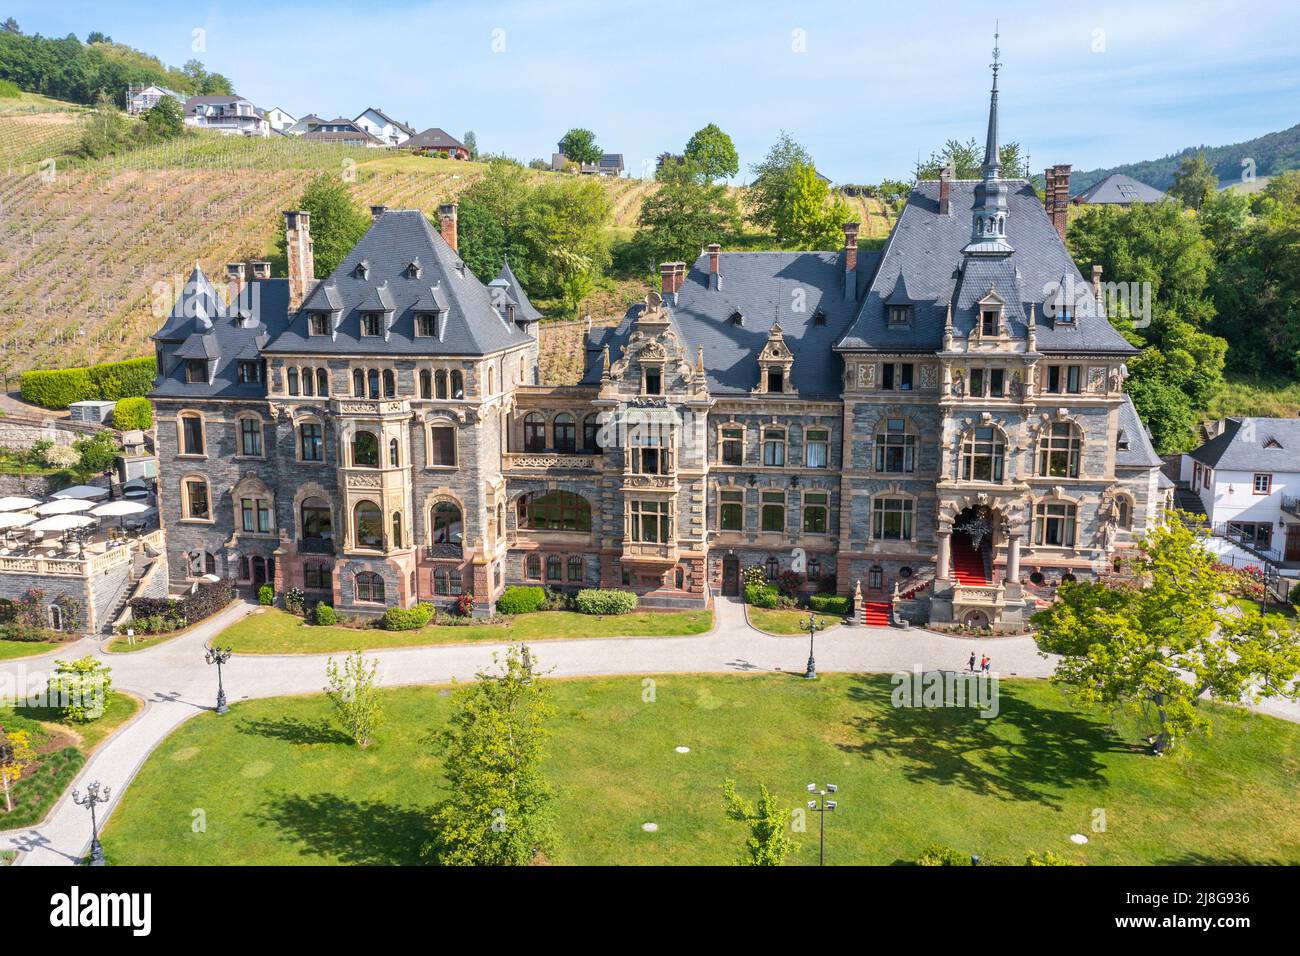 Schloss Lieser, Lieser, Moselle Valley, Germany Stock Photo